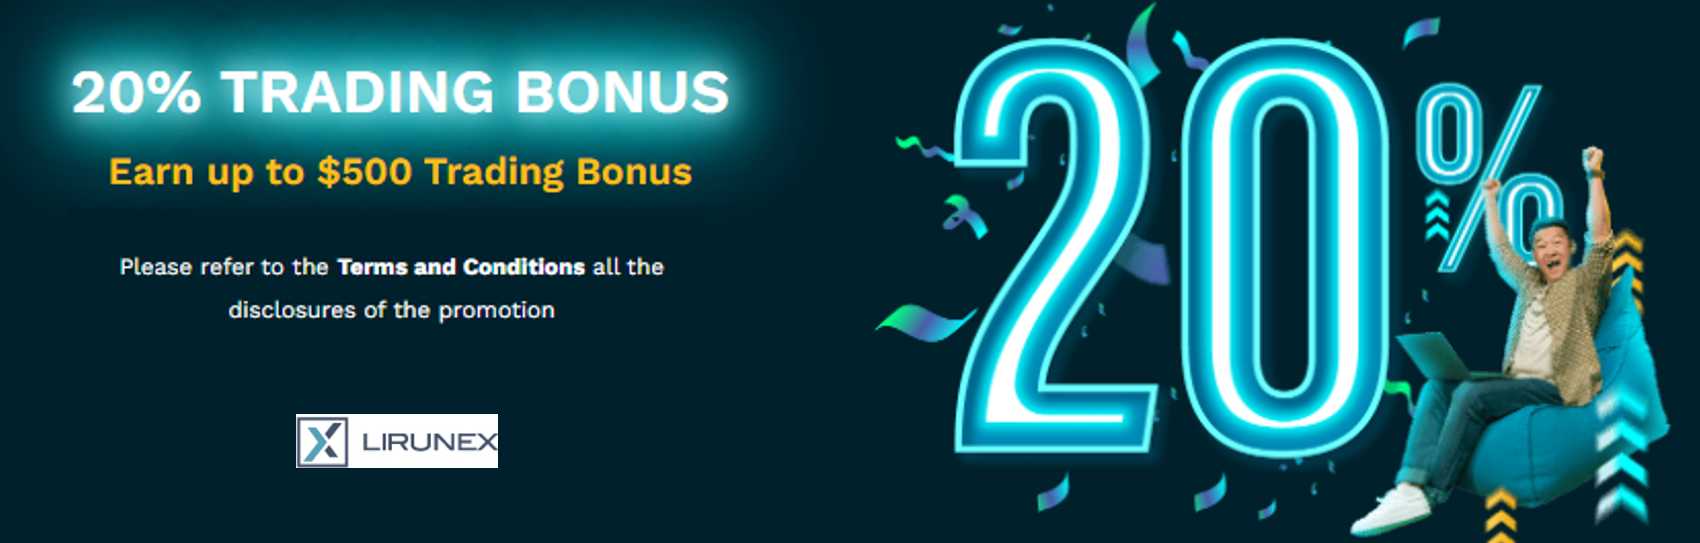 20% Trading Bonus – Lirunex